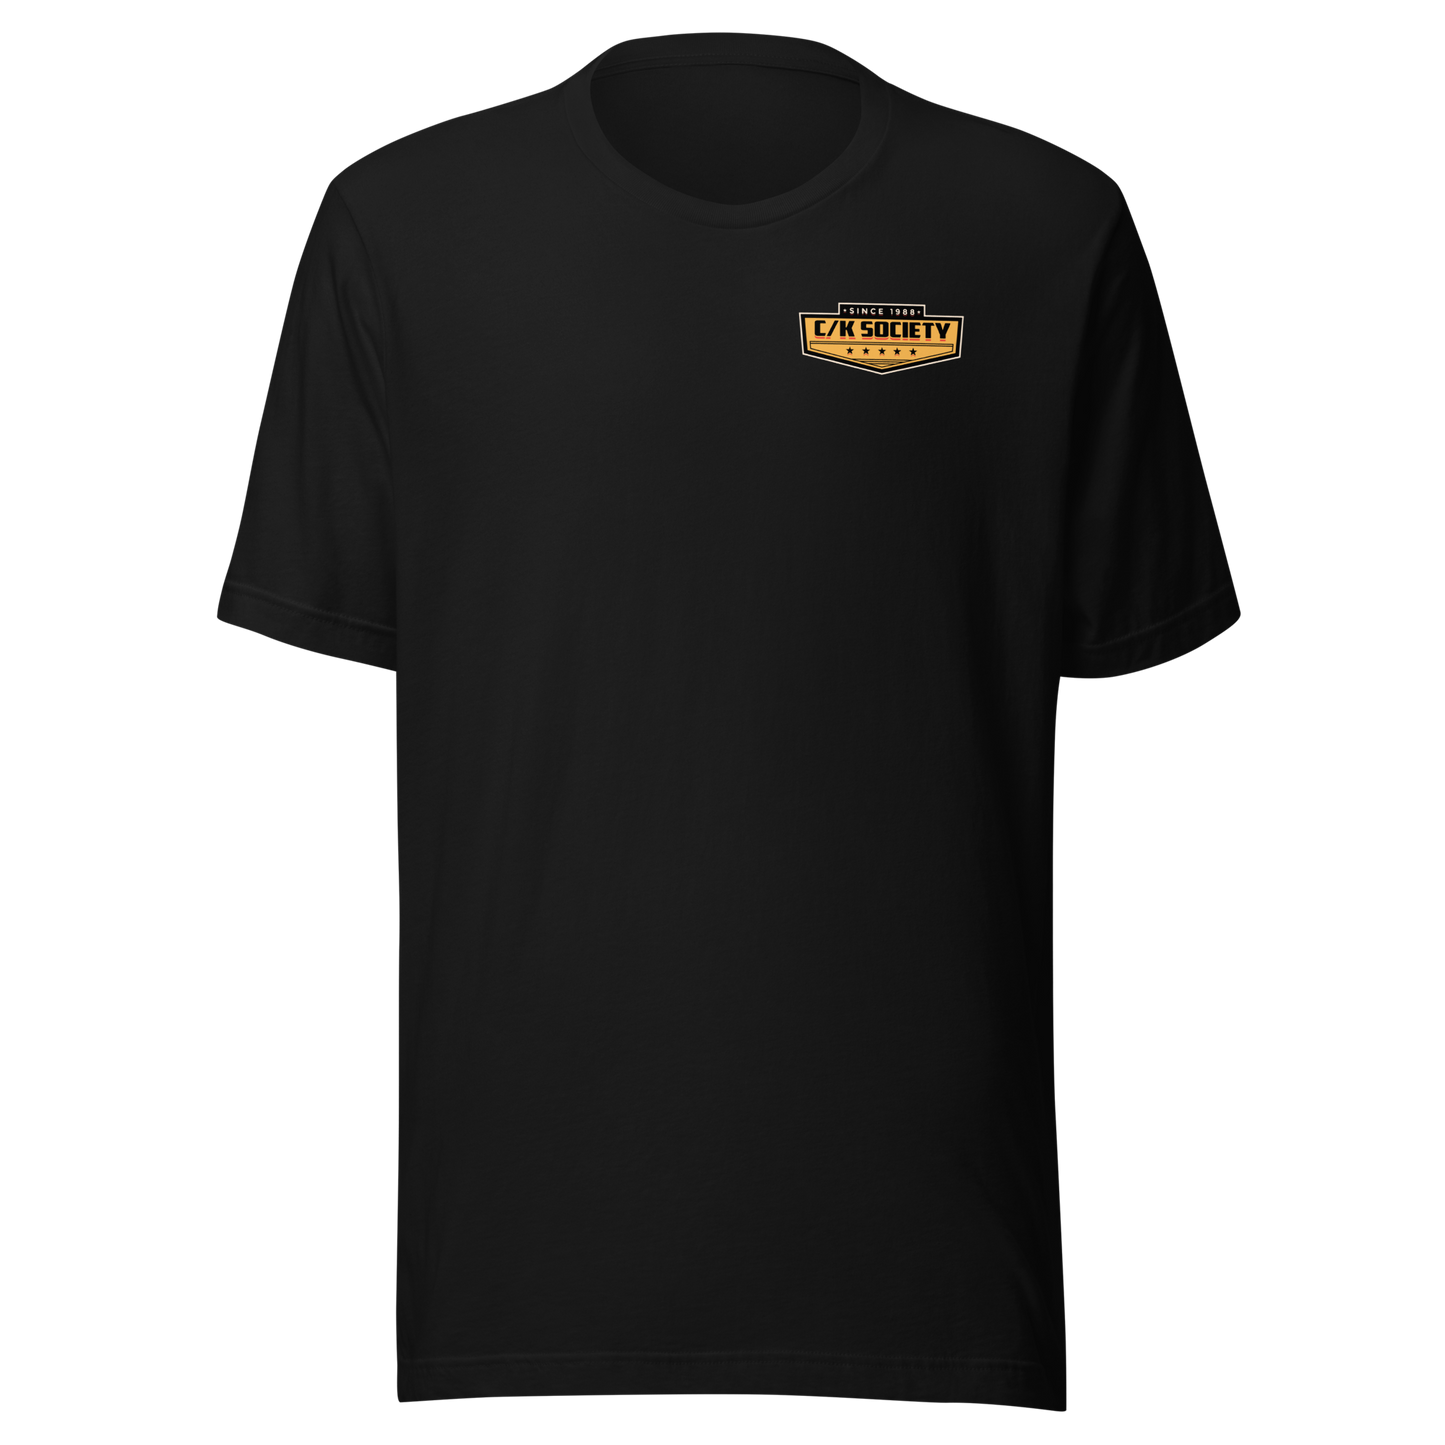 C/K Society Team2Door Lowered Chevy 2-Door Tahoe Short-Sleeve Unisex T-Shirt